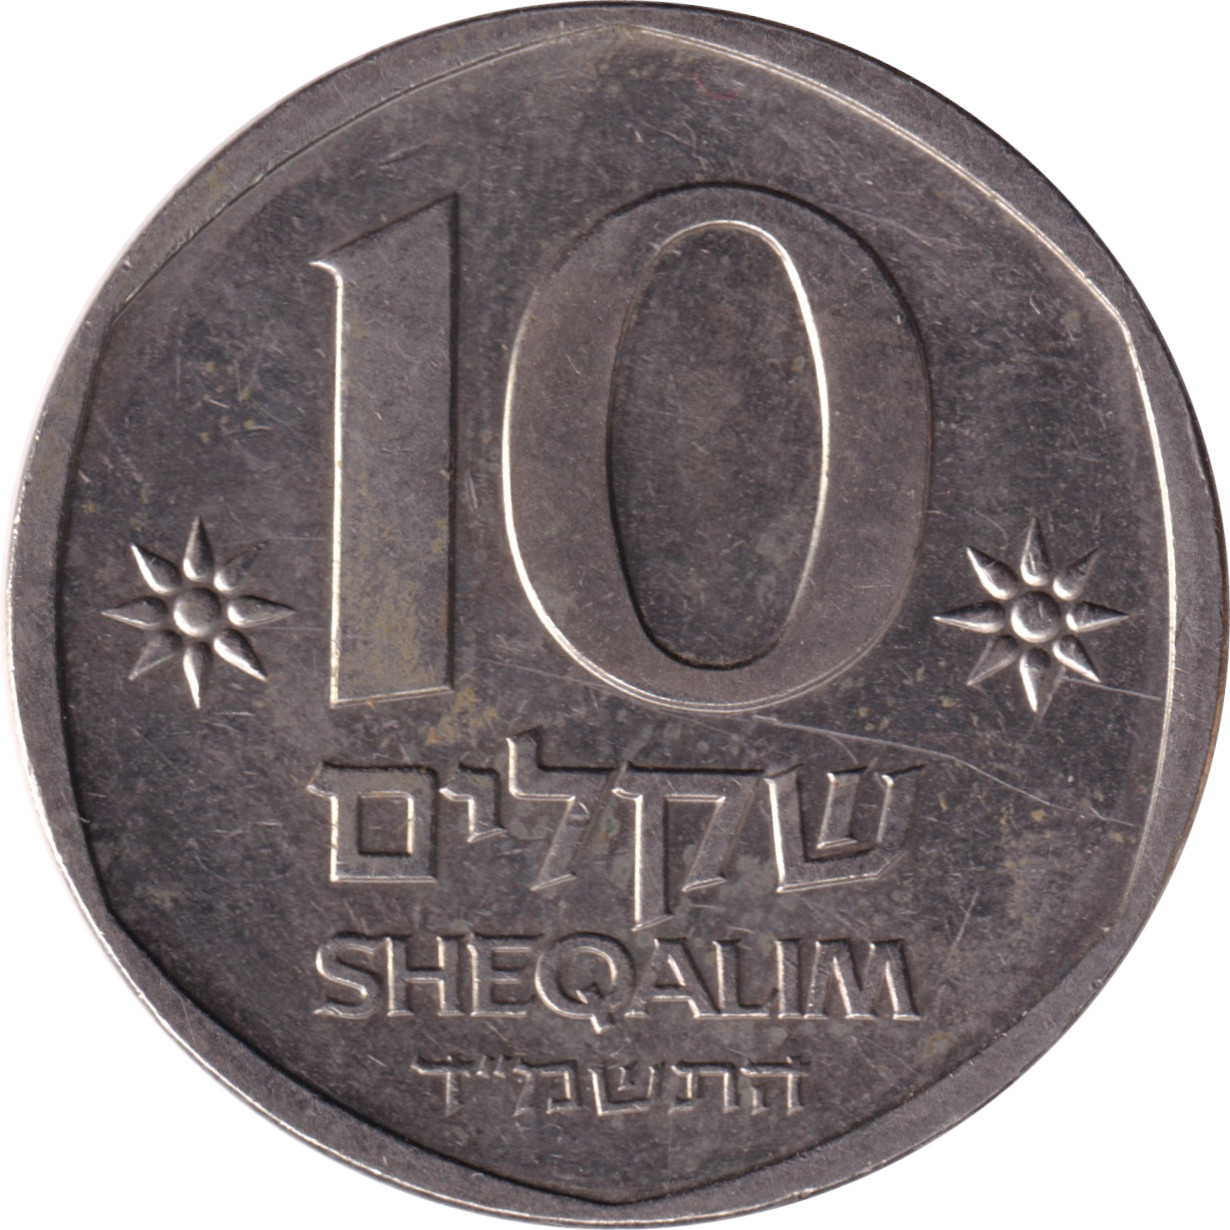 10 sheqalim - Theodor Herzl